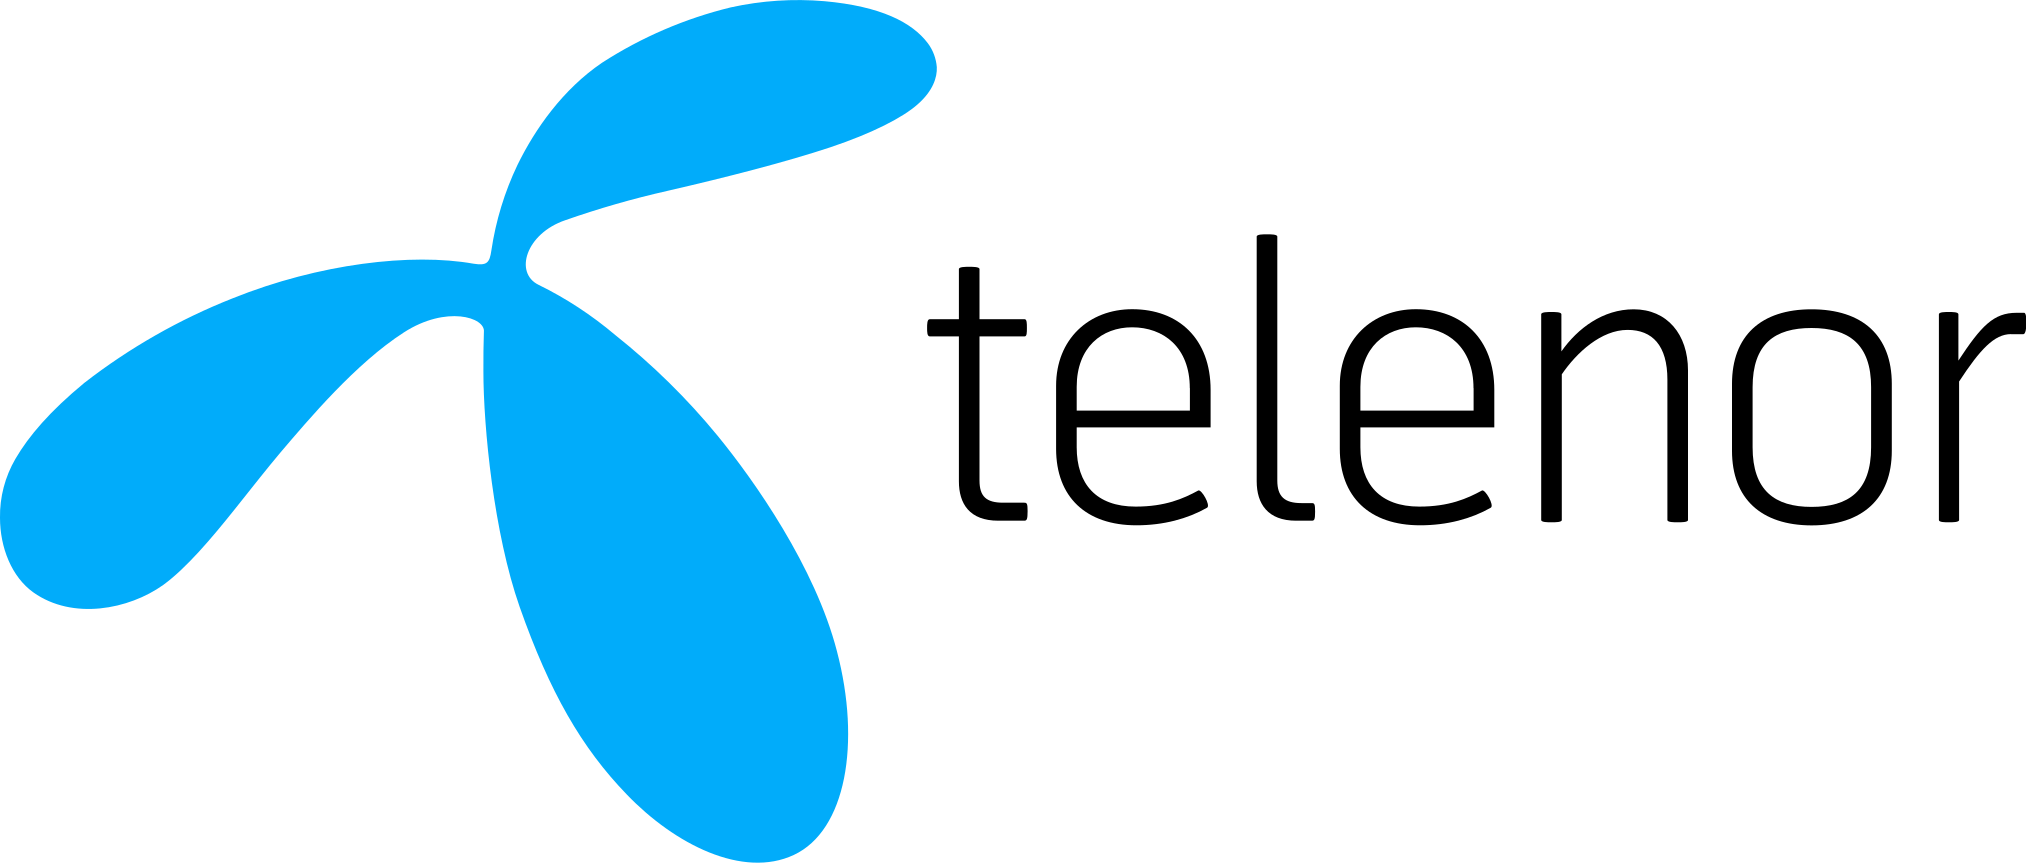 2026px-Telenor_Logo.svg